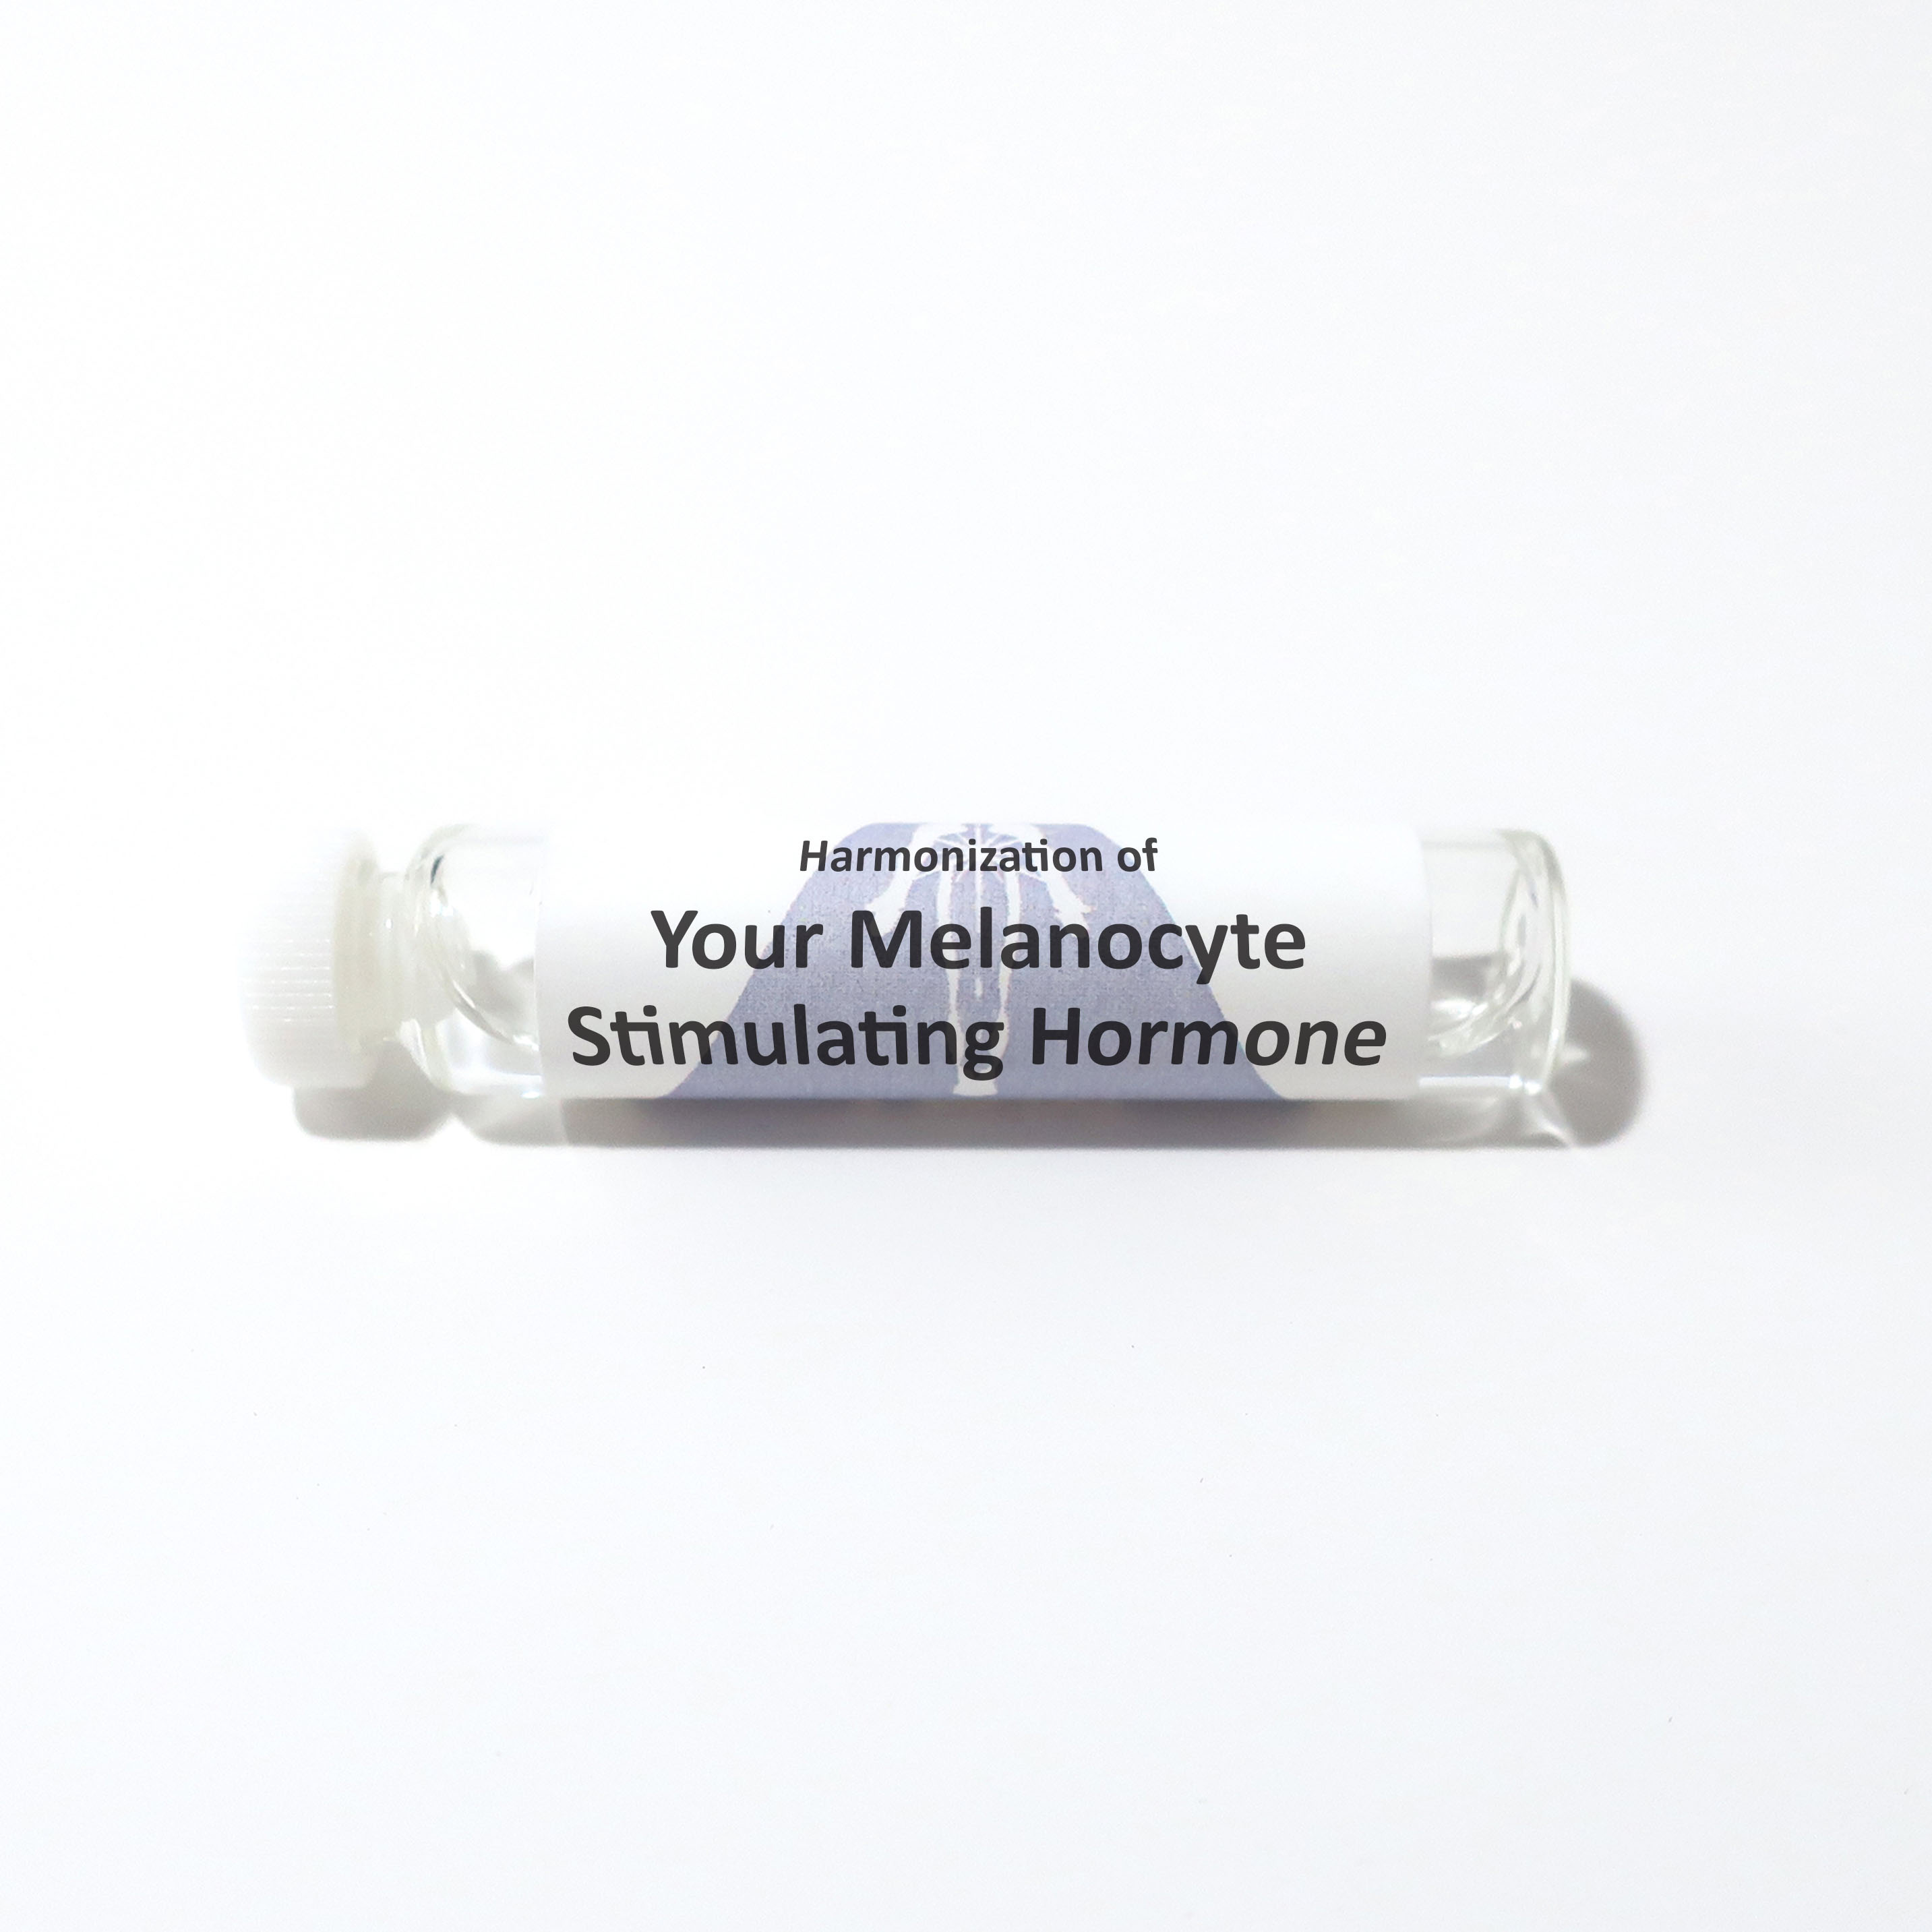 Your Melanocyte Stimulating Hormone